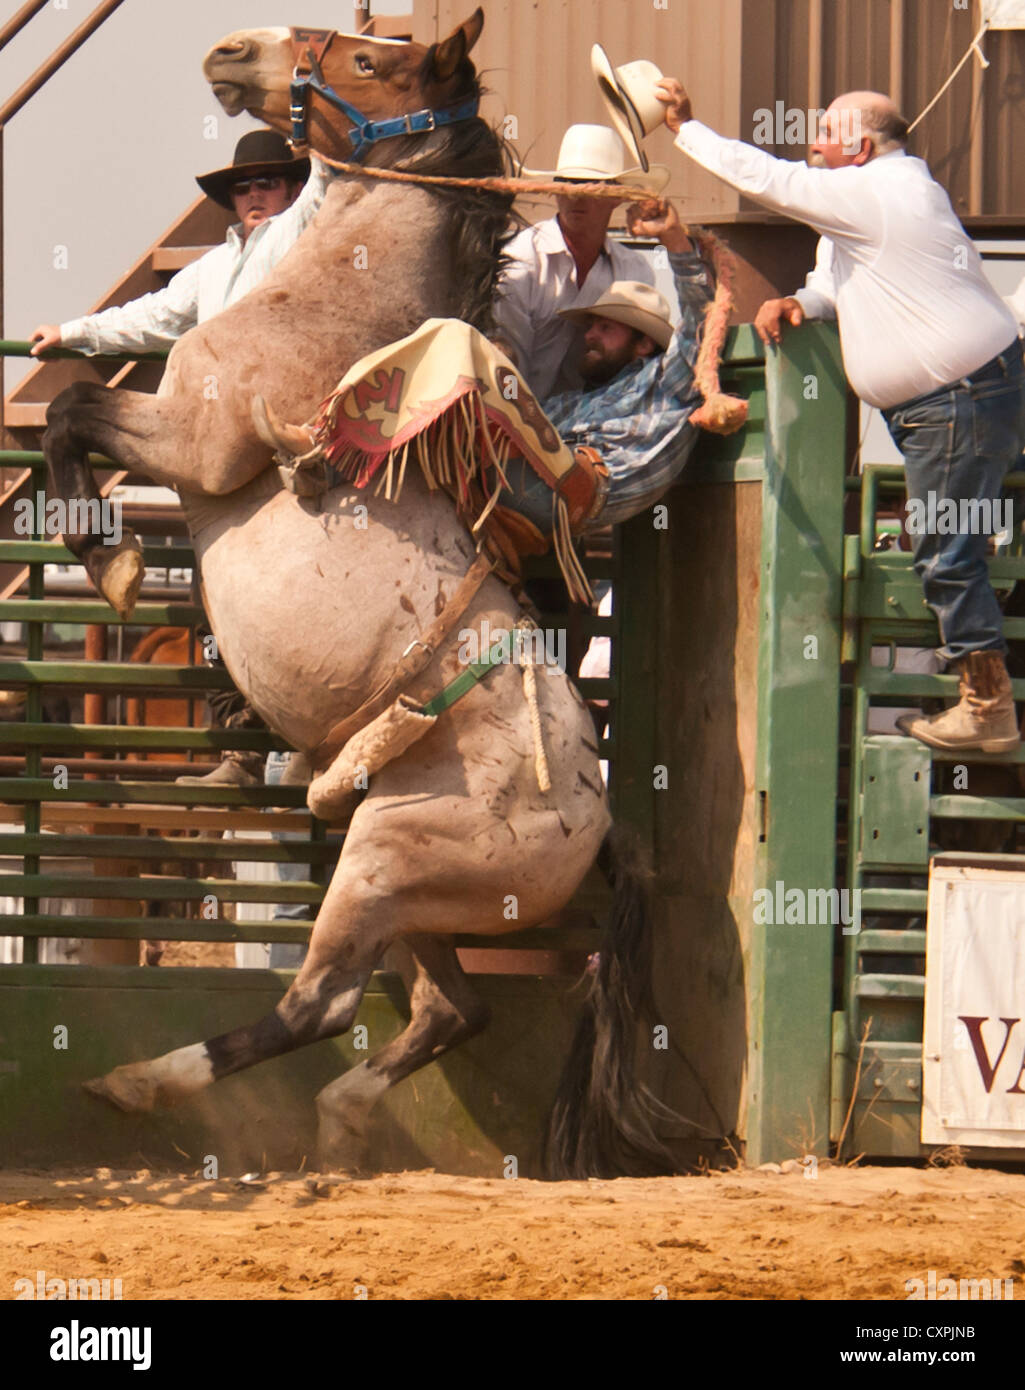 Cowboy coincé dans la chute de cheval au cours de la Selle Bronc Événement au rodéo, California, USA Banque D'Images